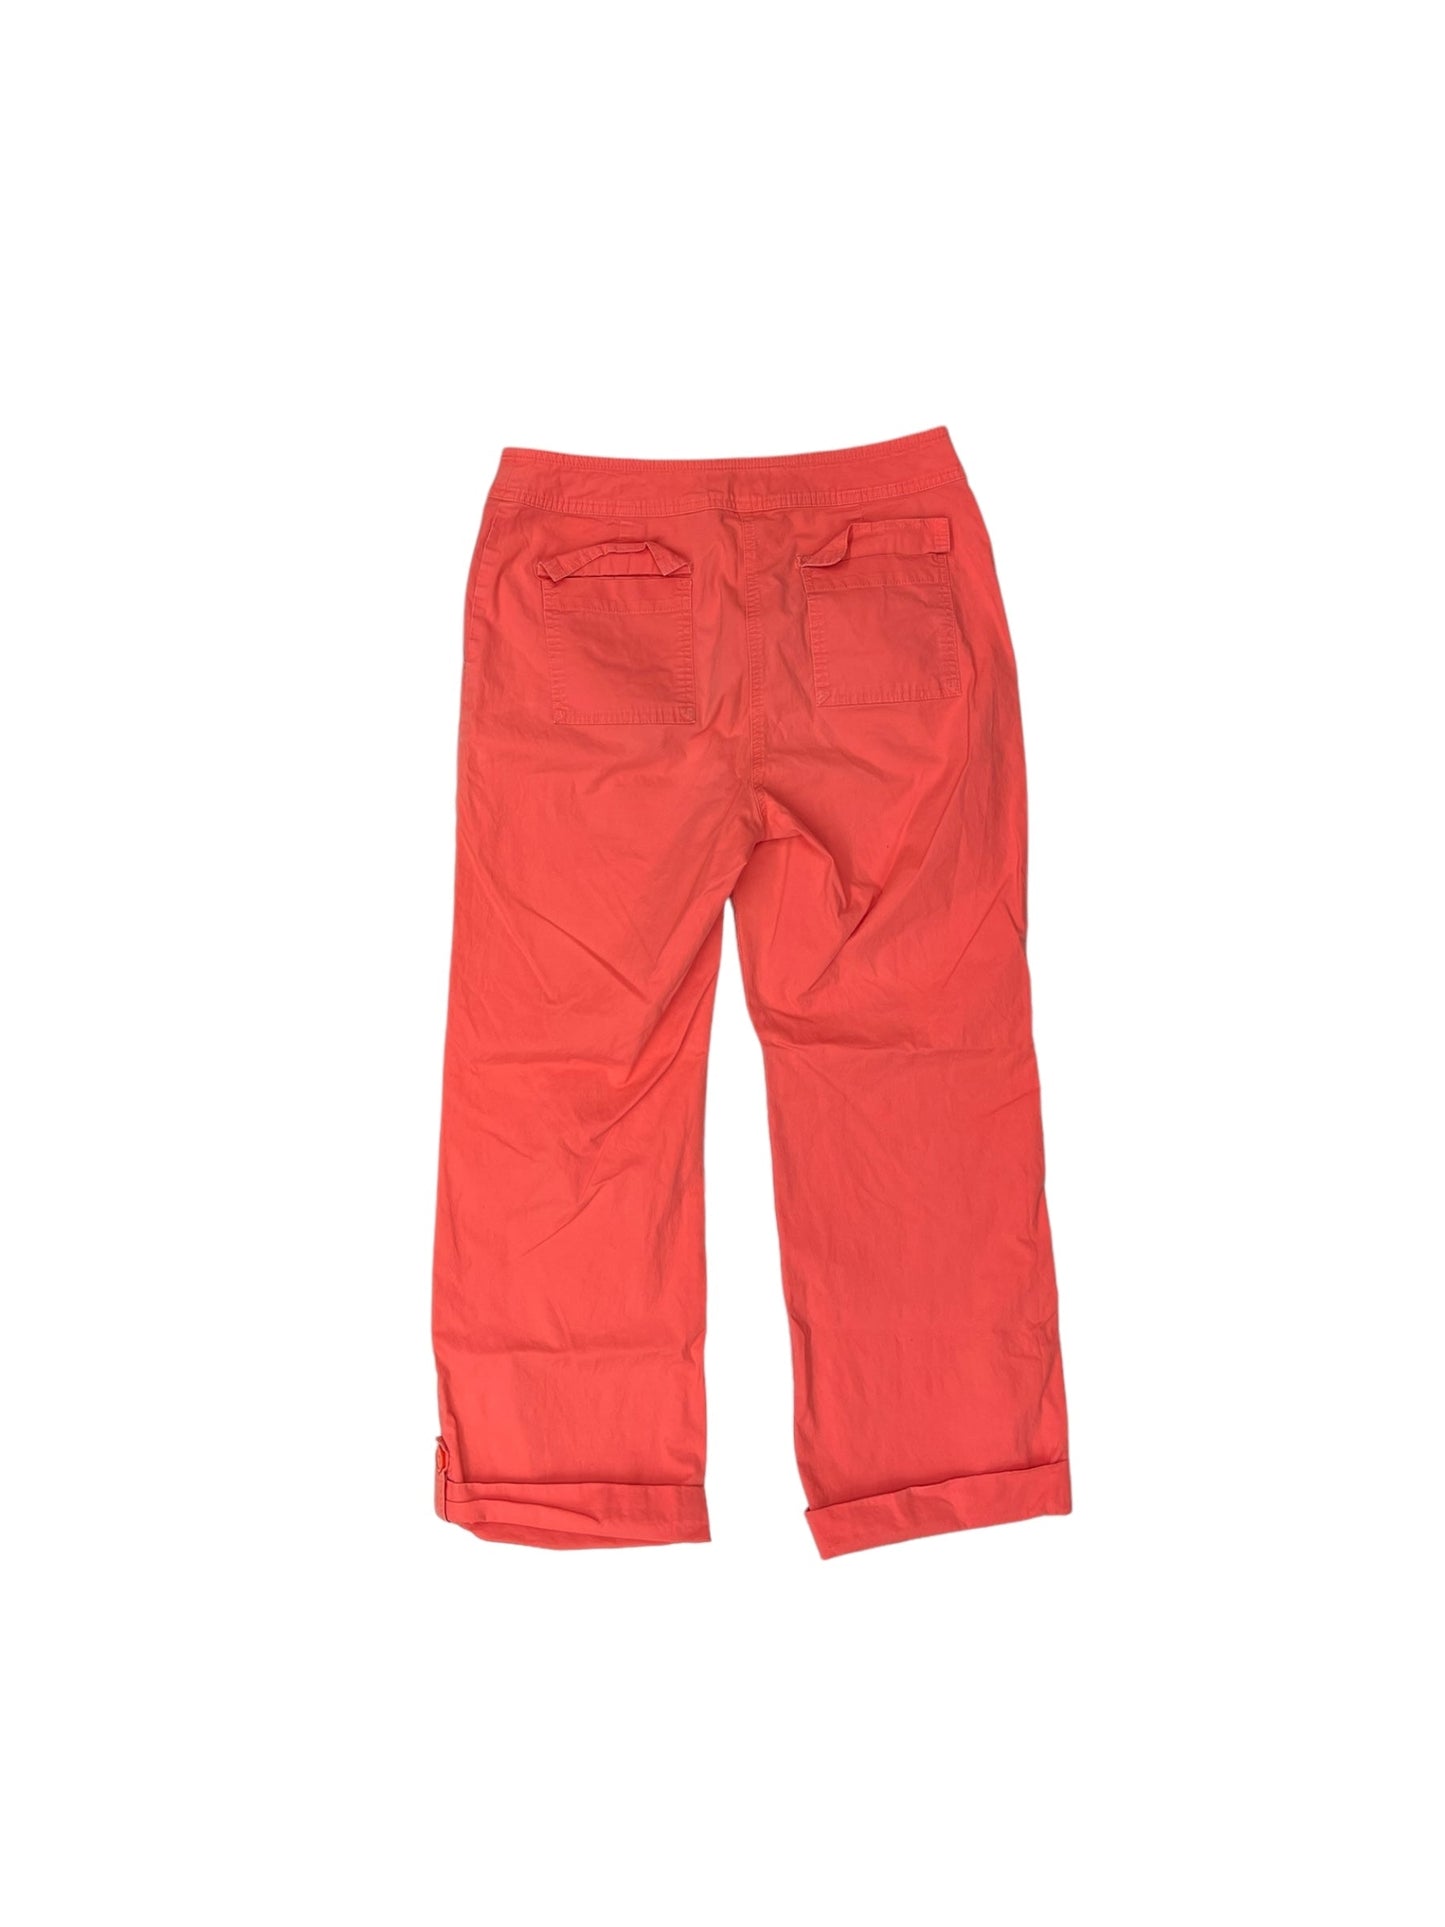 Orange Pants Cargo & Utility Nine And Company, Size 10